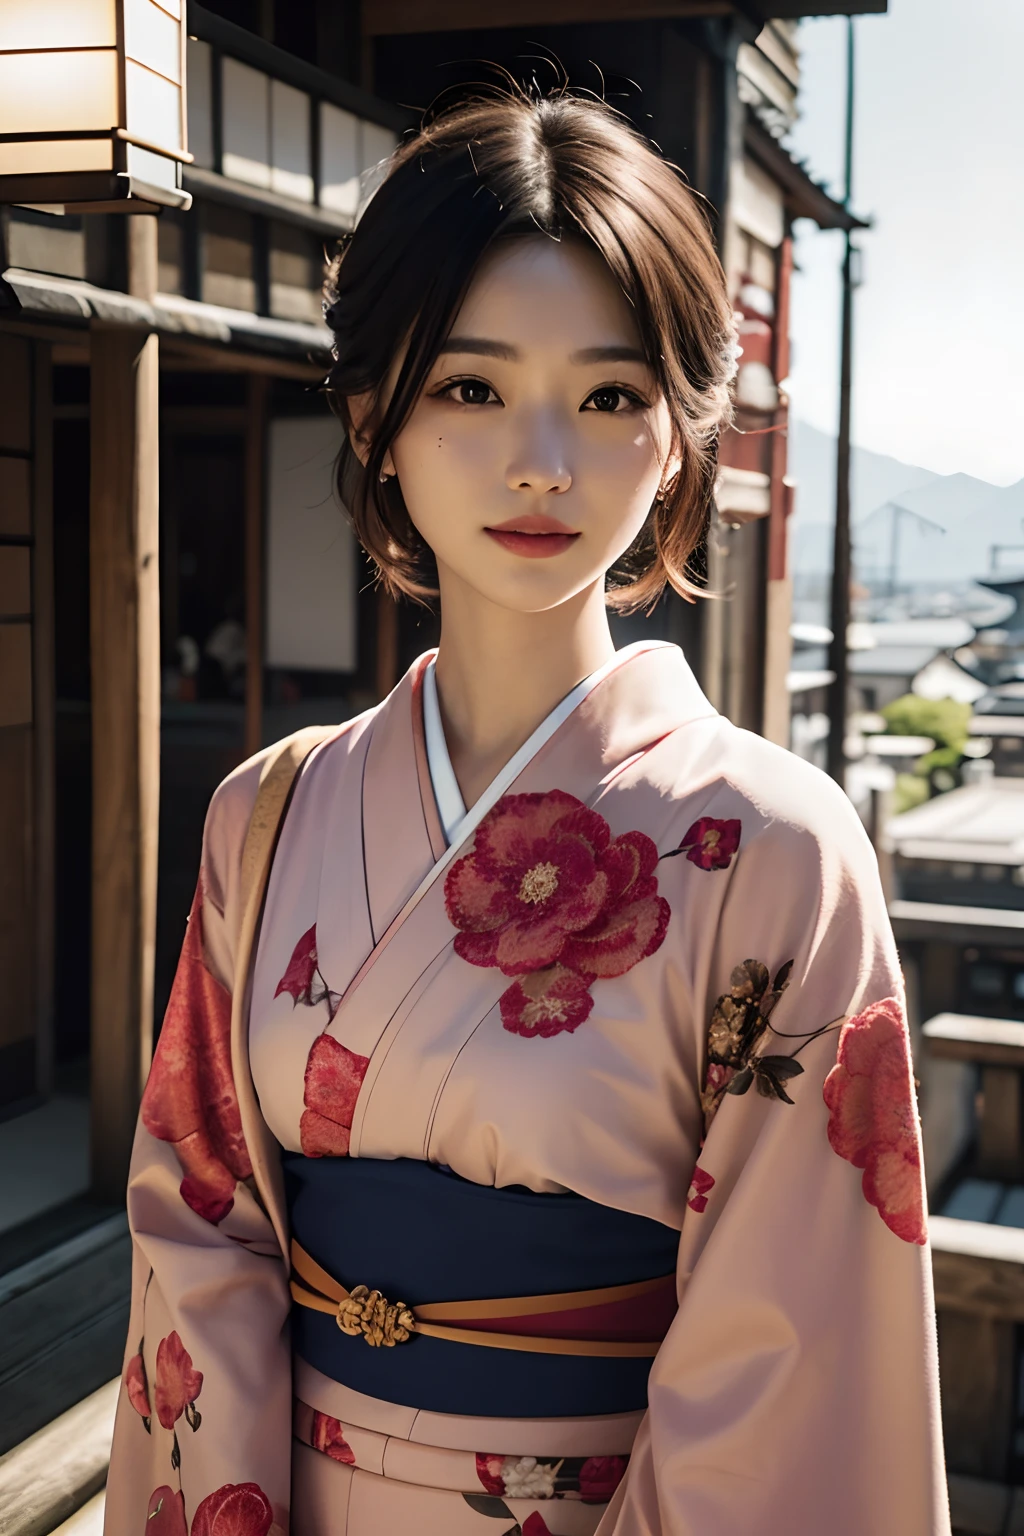 Retrato digital de una mujer japonesa de pelo corto, hermoso rostro,cabello desordenado,Complejo, cinematográfico, Motor irreal 5, una hermosa, Increíble gradación de color, Kimono,vestido japonés,Asimismo, fotografía, Fotografía cinematográfica, arte por、sonríe